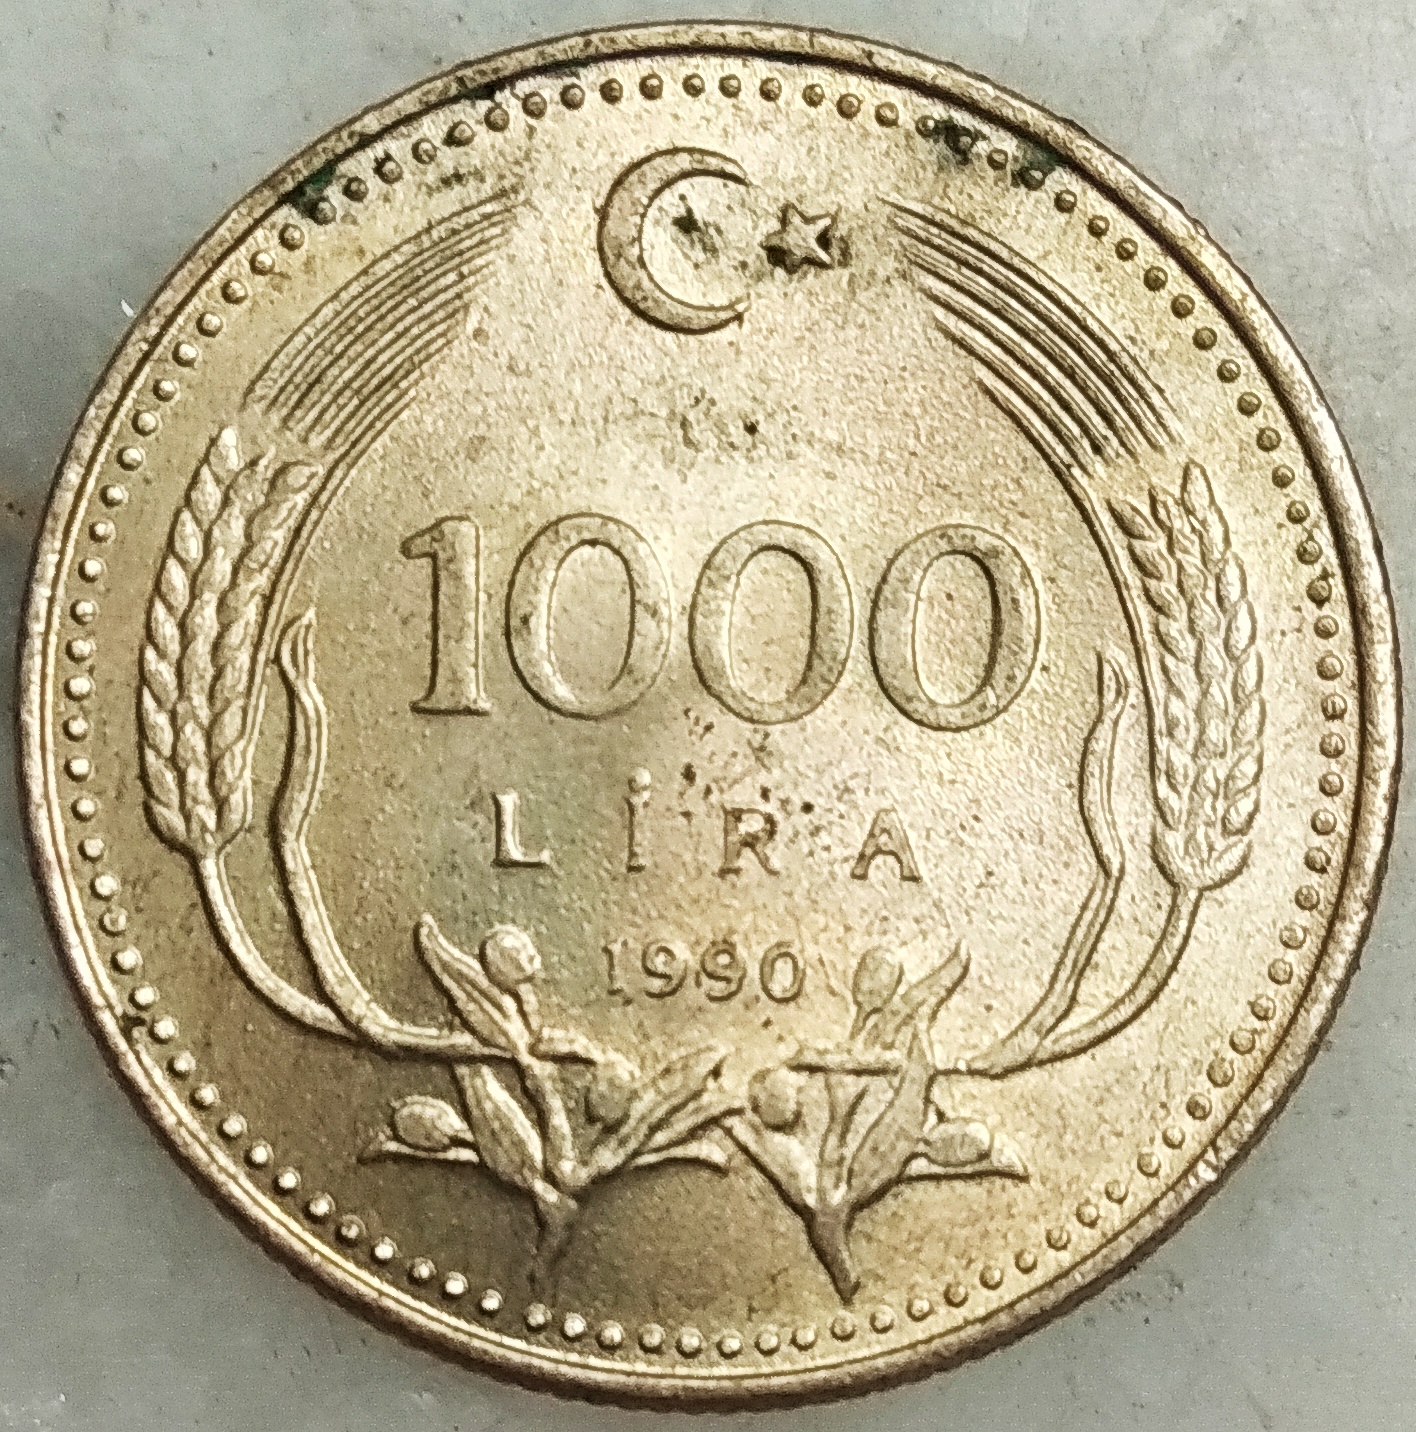 1000 Lira 1990 Ön Yüz